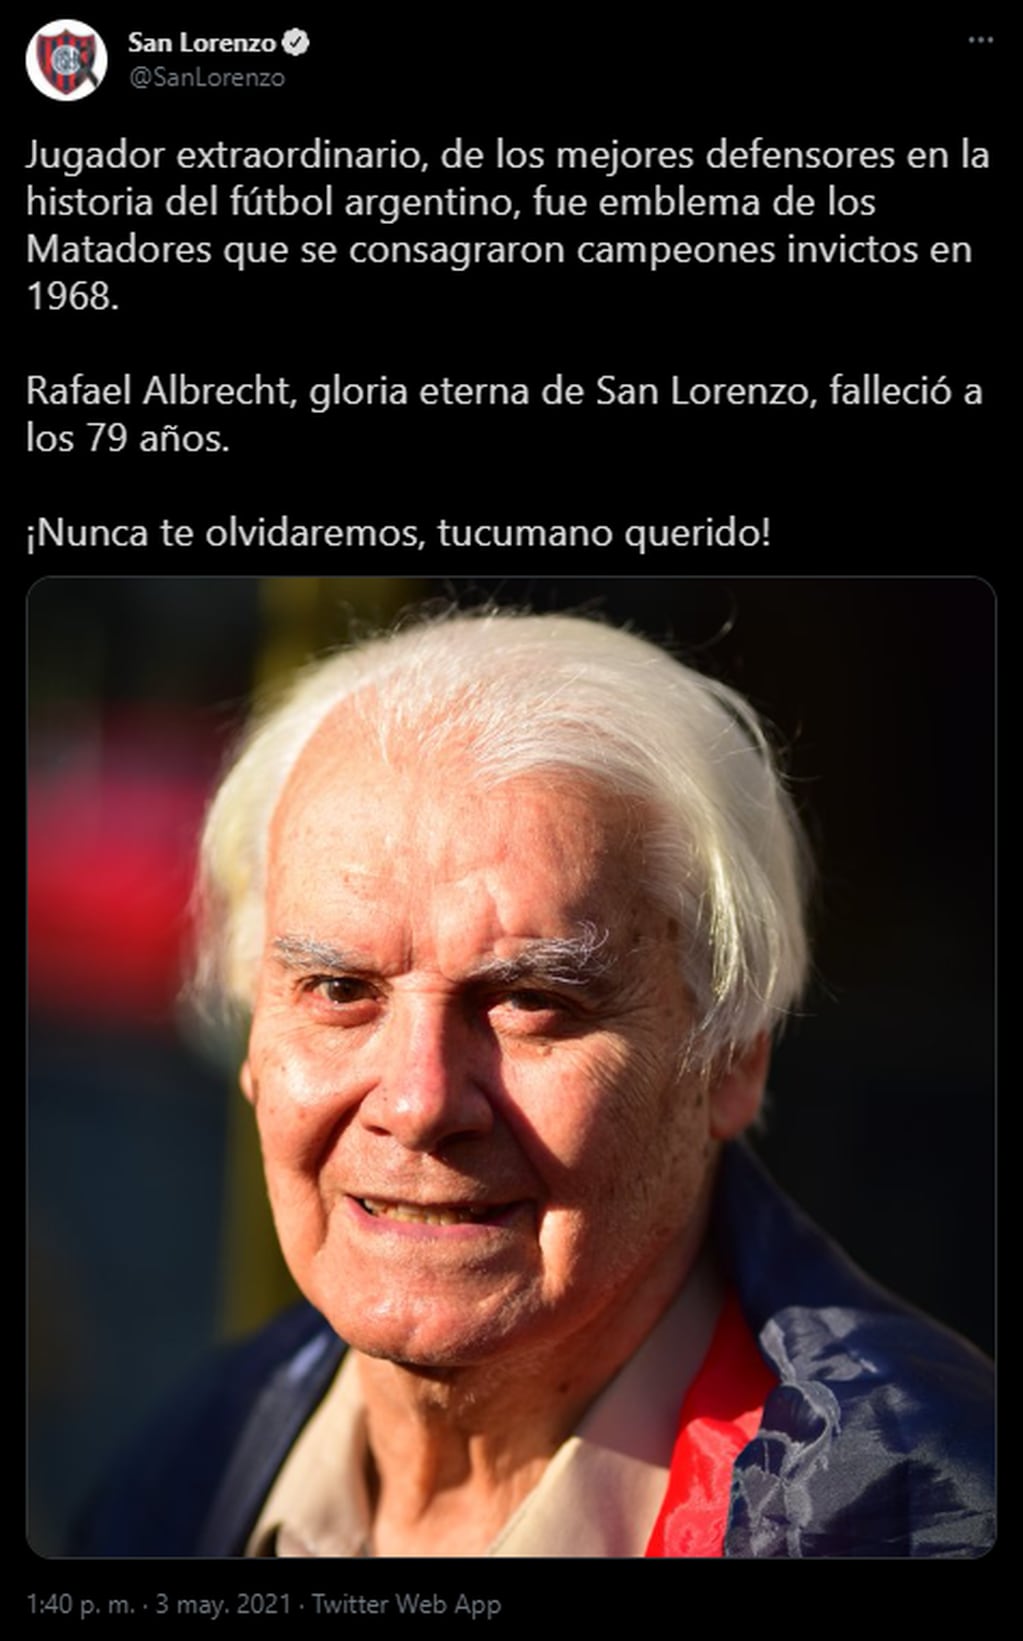 El tuit de San Lorenzo tras la muerte de José Rafael Albrecht.